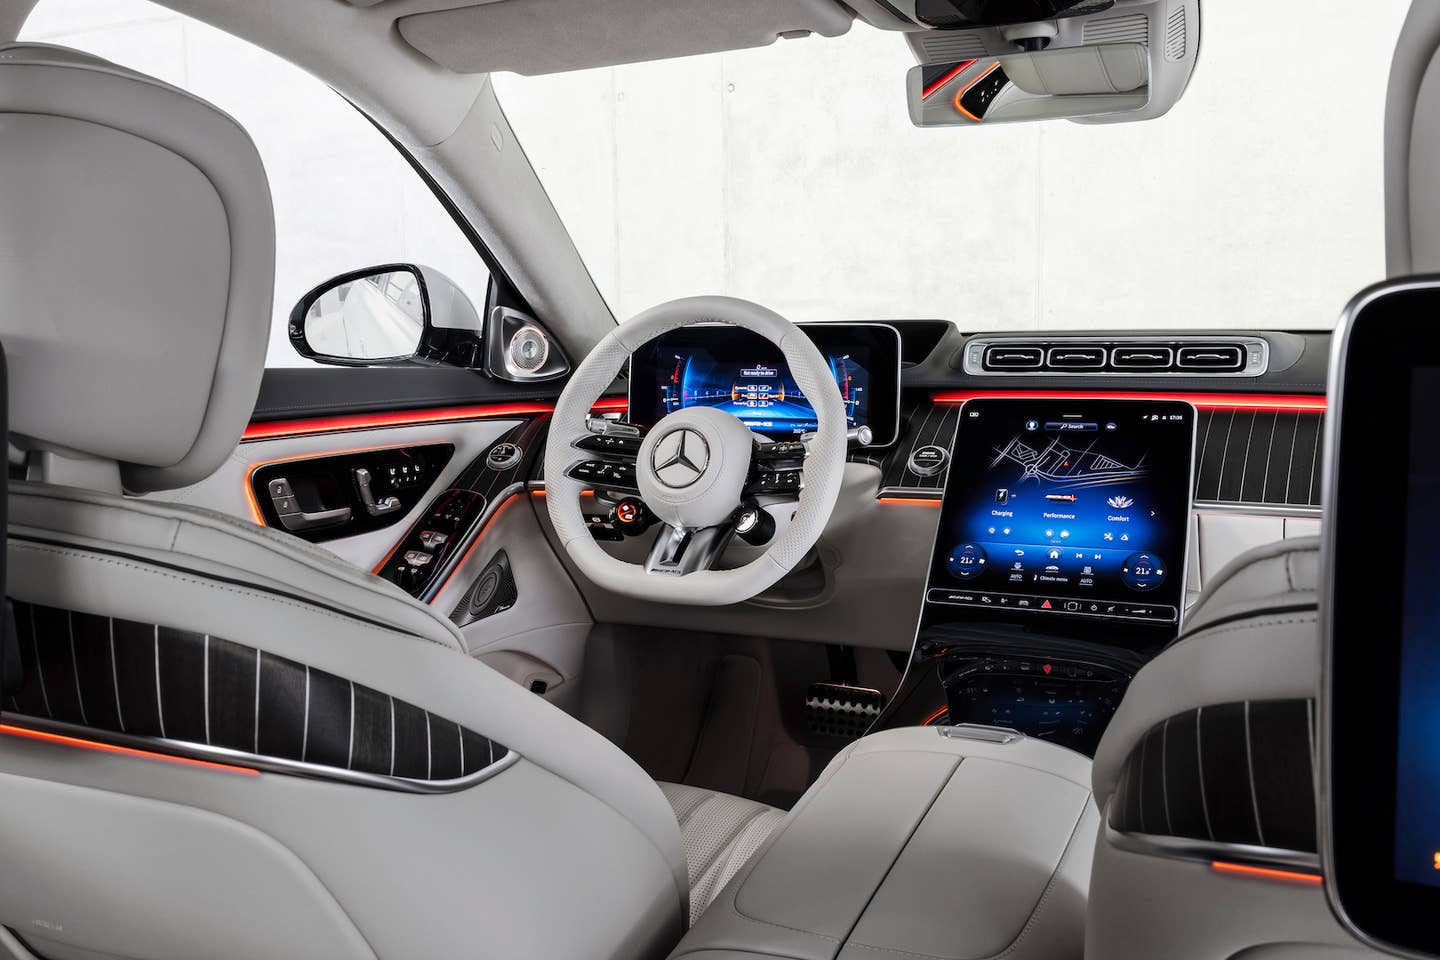 Der neue Mercedes-AMG S 63 E PERFORMANCE (Angaben WLTP | Kraftstoffverbrauch gewichtet, kombiniert: 4,4 l/100 km, CO2-Emissionen gewichtet, kombiniert: 100 g/km, Stromverbrauch gewichtet, kombiniert: 21,4 kWh/100 km); Exterieur: MANUFAKTUR kaschmirweiß magno; Interieur: Leder Exklusiv Nappa AMG macchiatobeige / magmagrau  
//
The new Mercedes-AMG S 63 E PERFORMANCE (Data WLTP | weighted, combined fuel consumption: 4.4 l/100 km; weighted, combined CO2 emissions: 100 g/km; weighted, combined power consumption: 21.4 kWh/100 km); exterior: MANUFAKTUR cashmere white magno; interior: AMG Exclusive nappa leather macchiato beige / magma grey